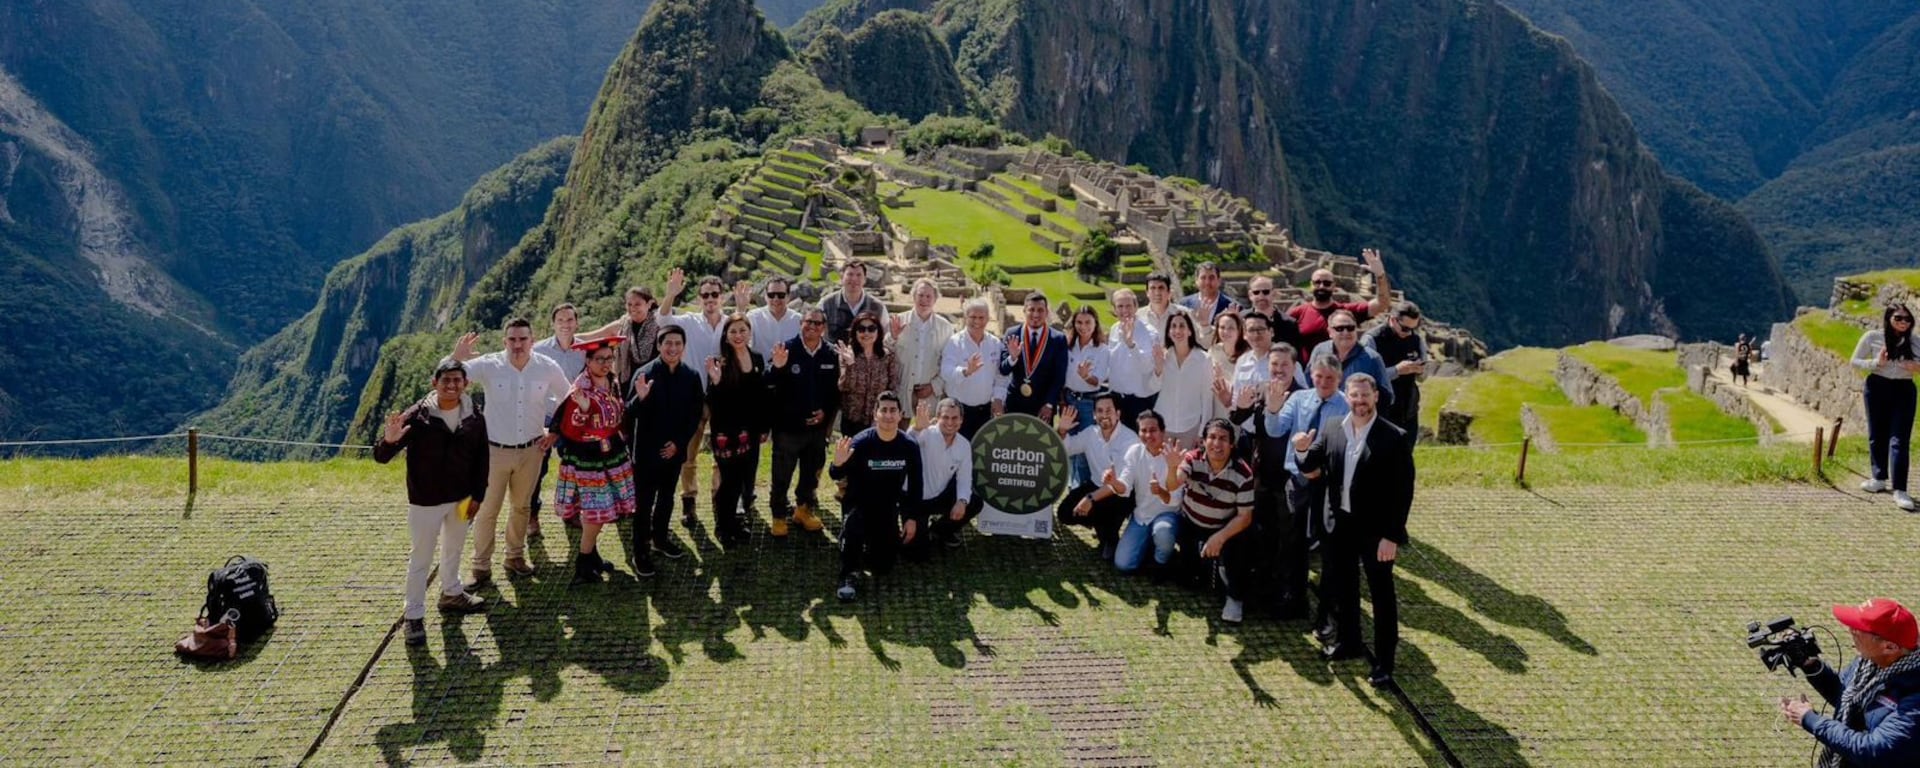 Machu Picchu certificada como la primera maravilla Carbono Neutral del mundo: el trabajo de Green Initiative por hacer un turismo sostenible